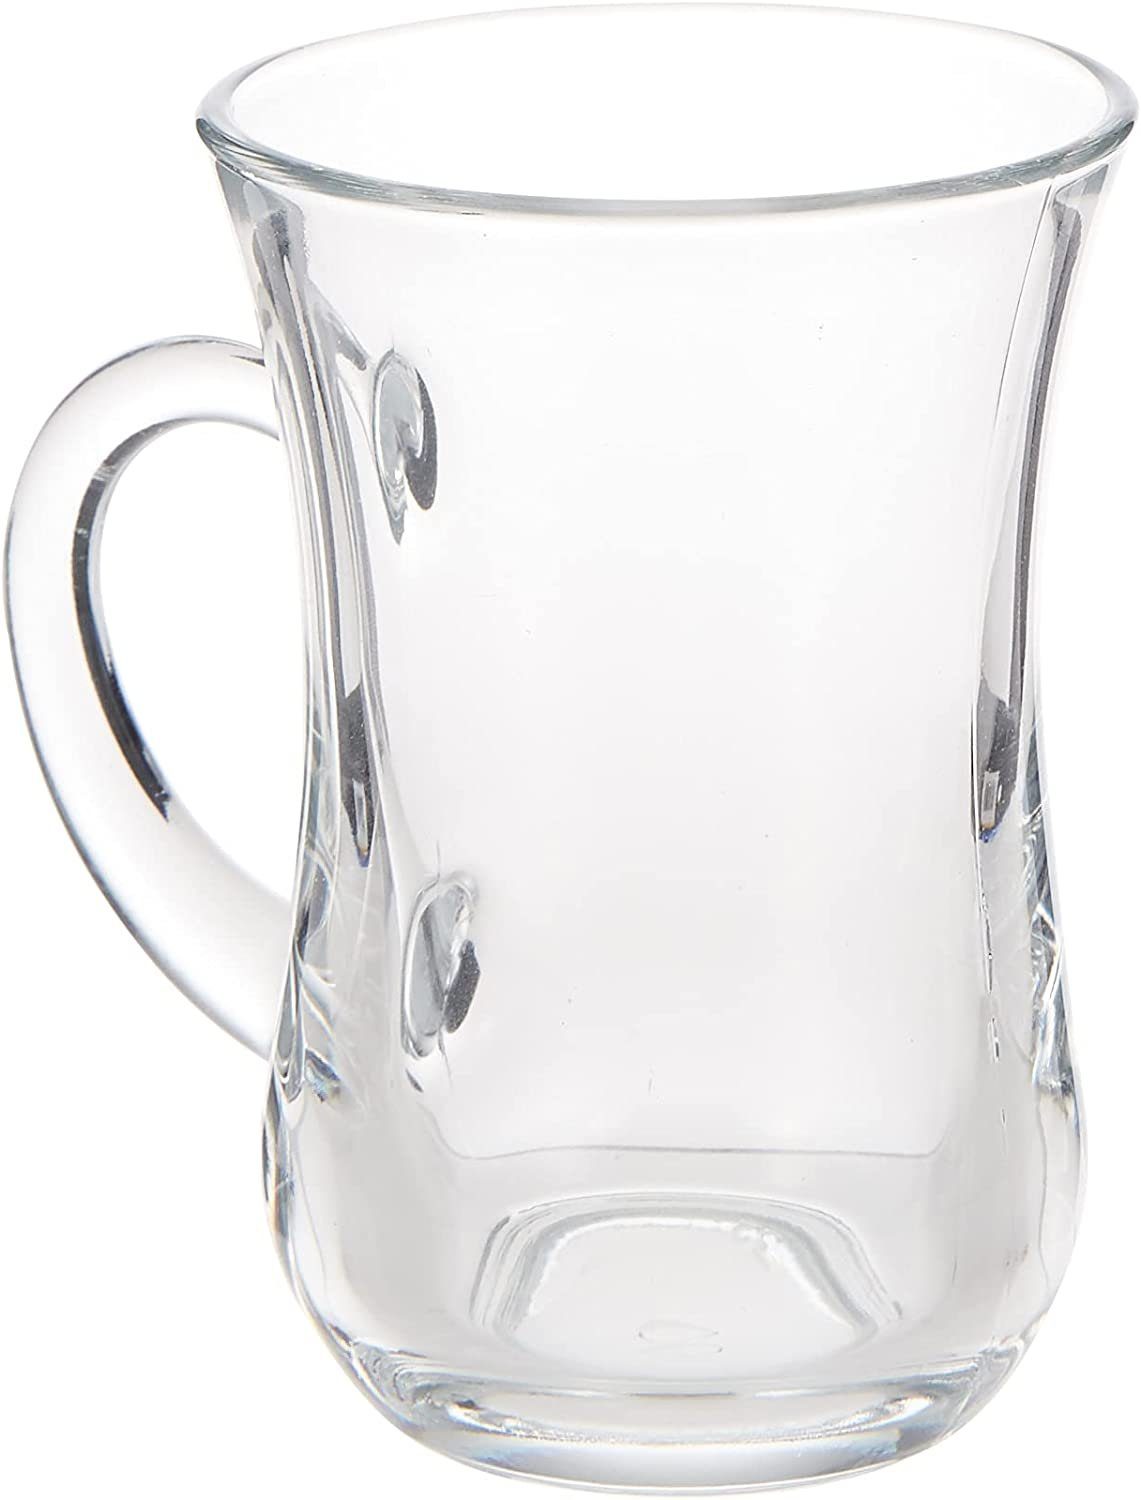 Pasabahce Gläser-Set Pasabahce Keyif, Glas, Teeglas Set 6 Teilig, Spülmaschinengeeignet